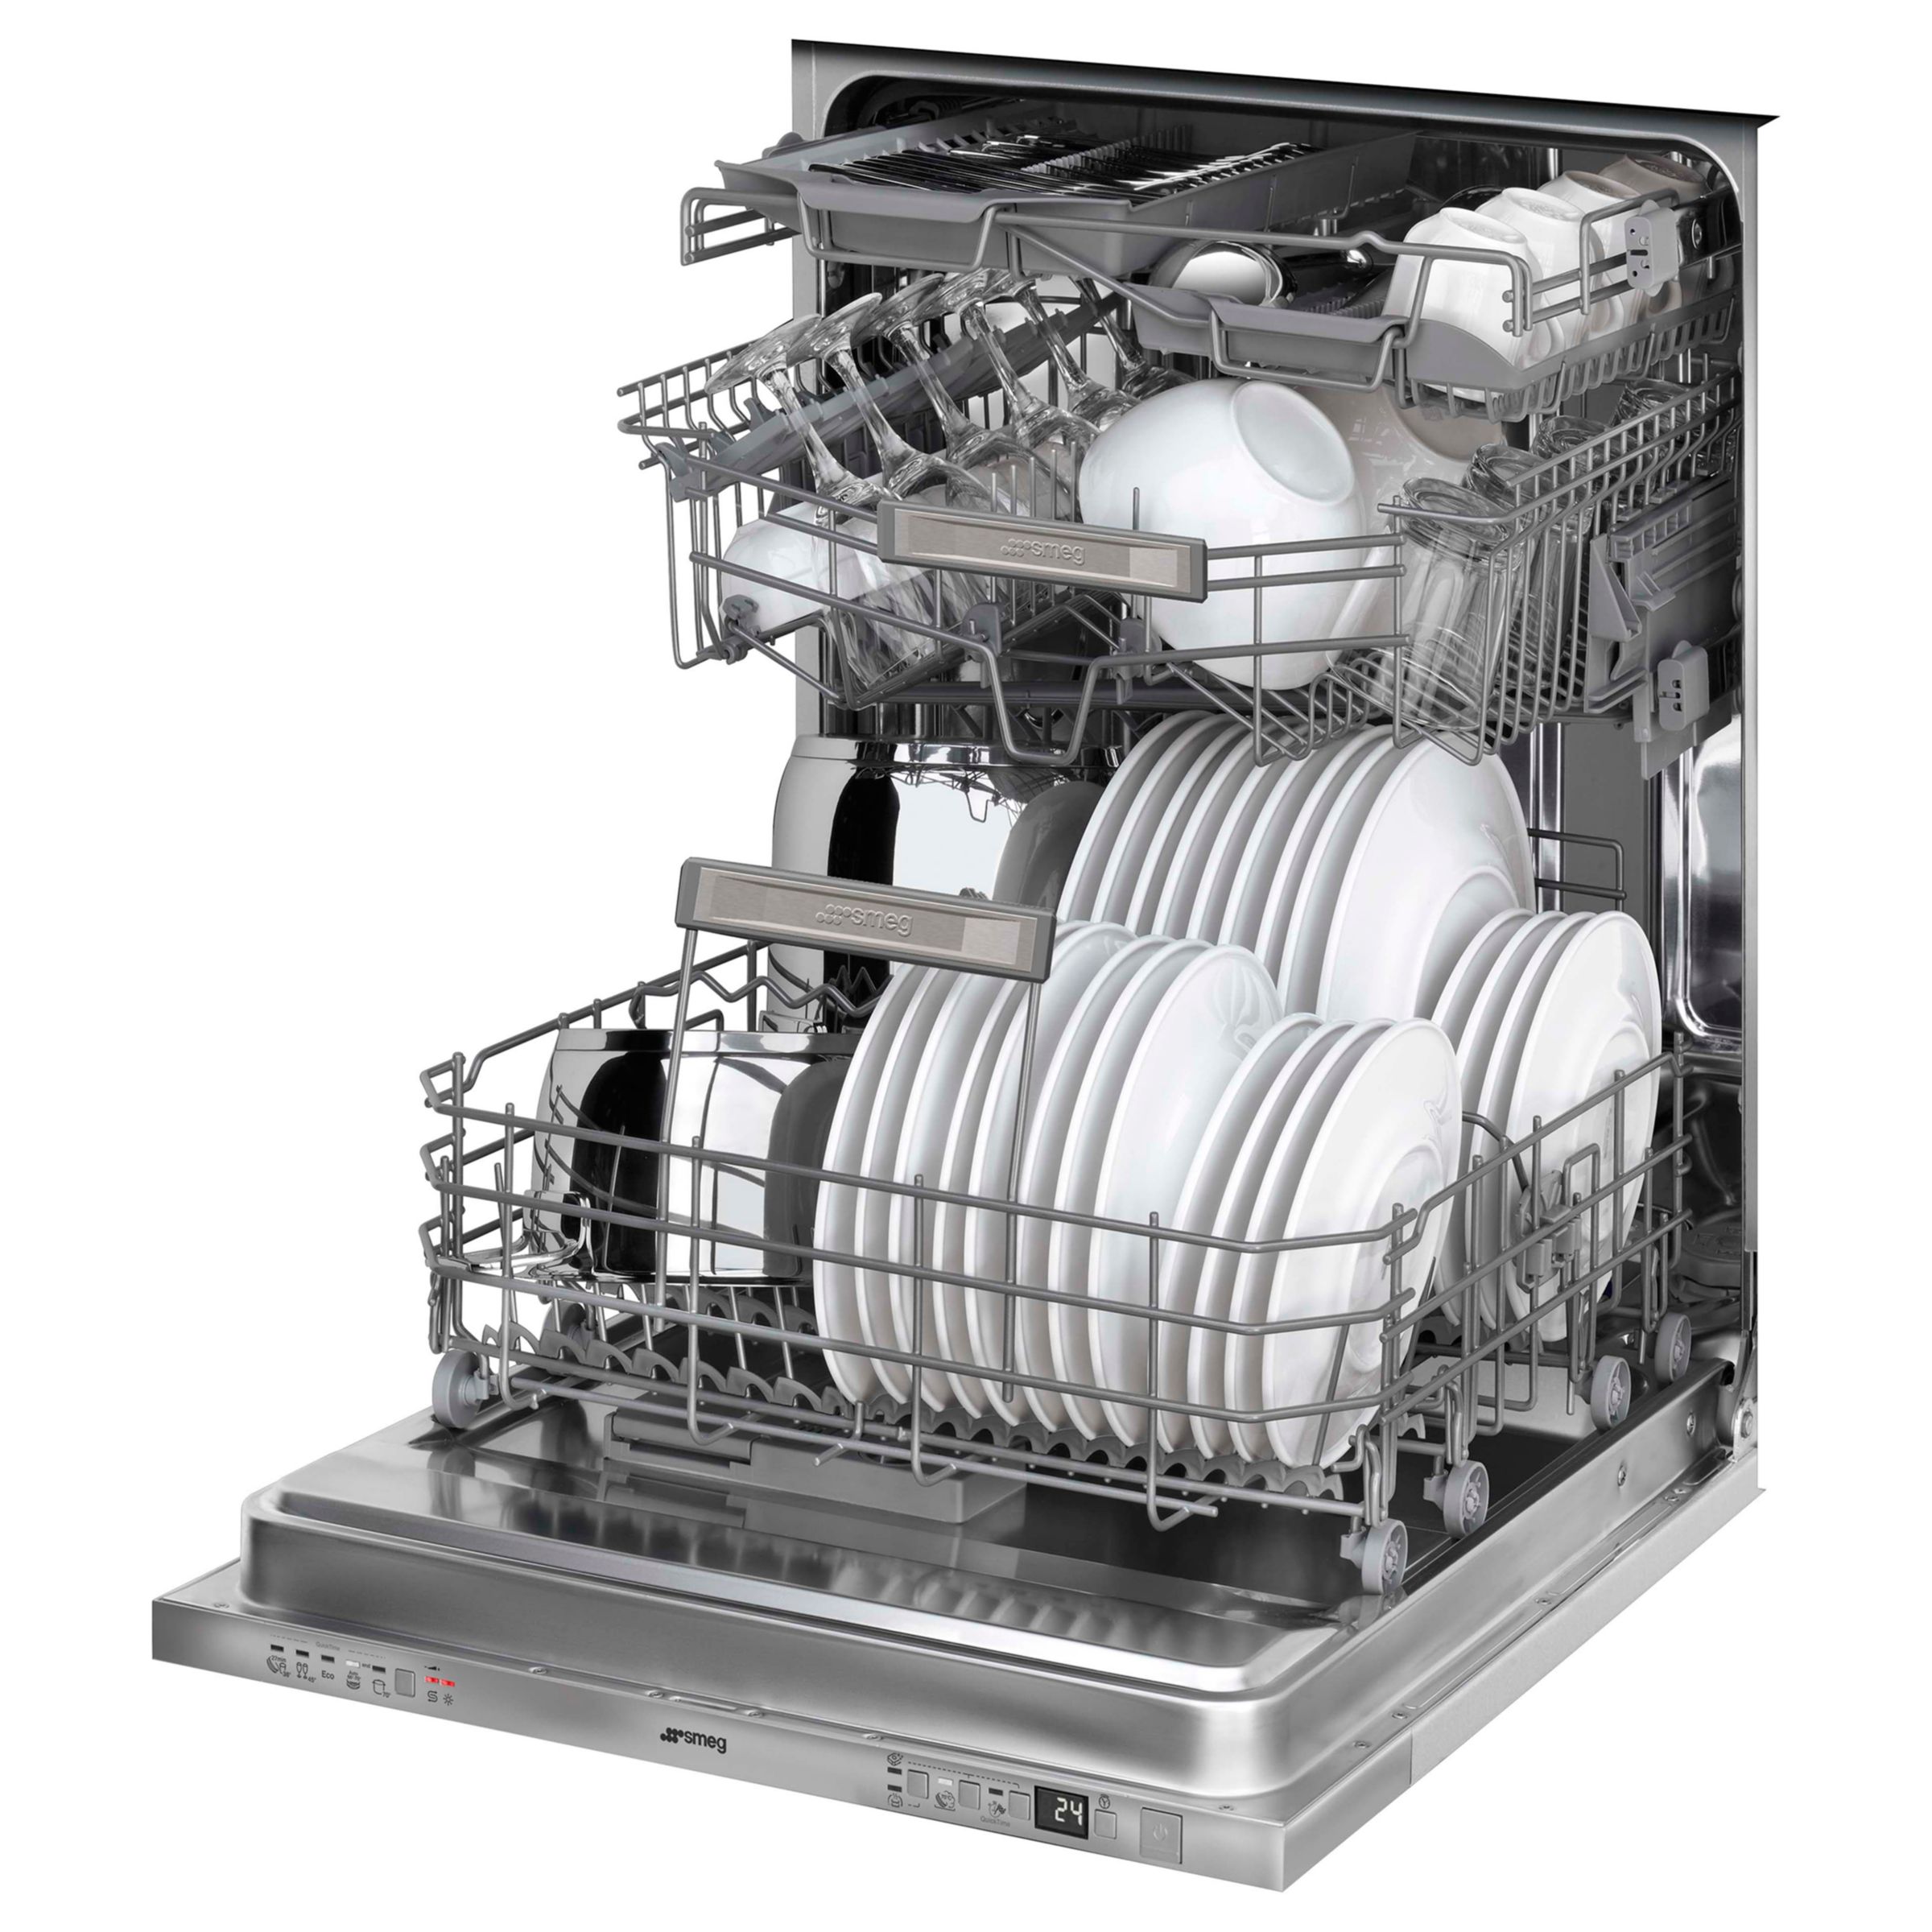 smeg dishwasher integrated